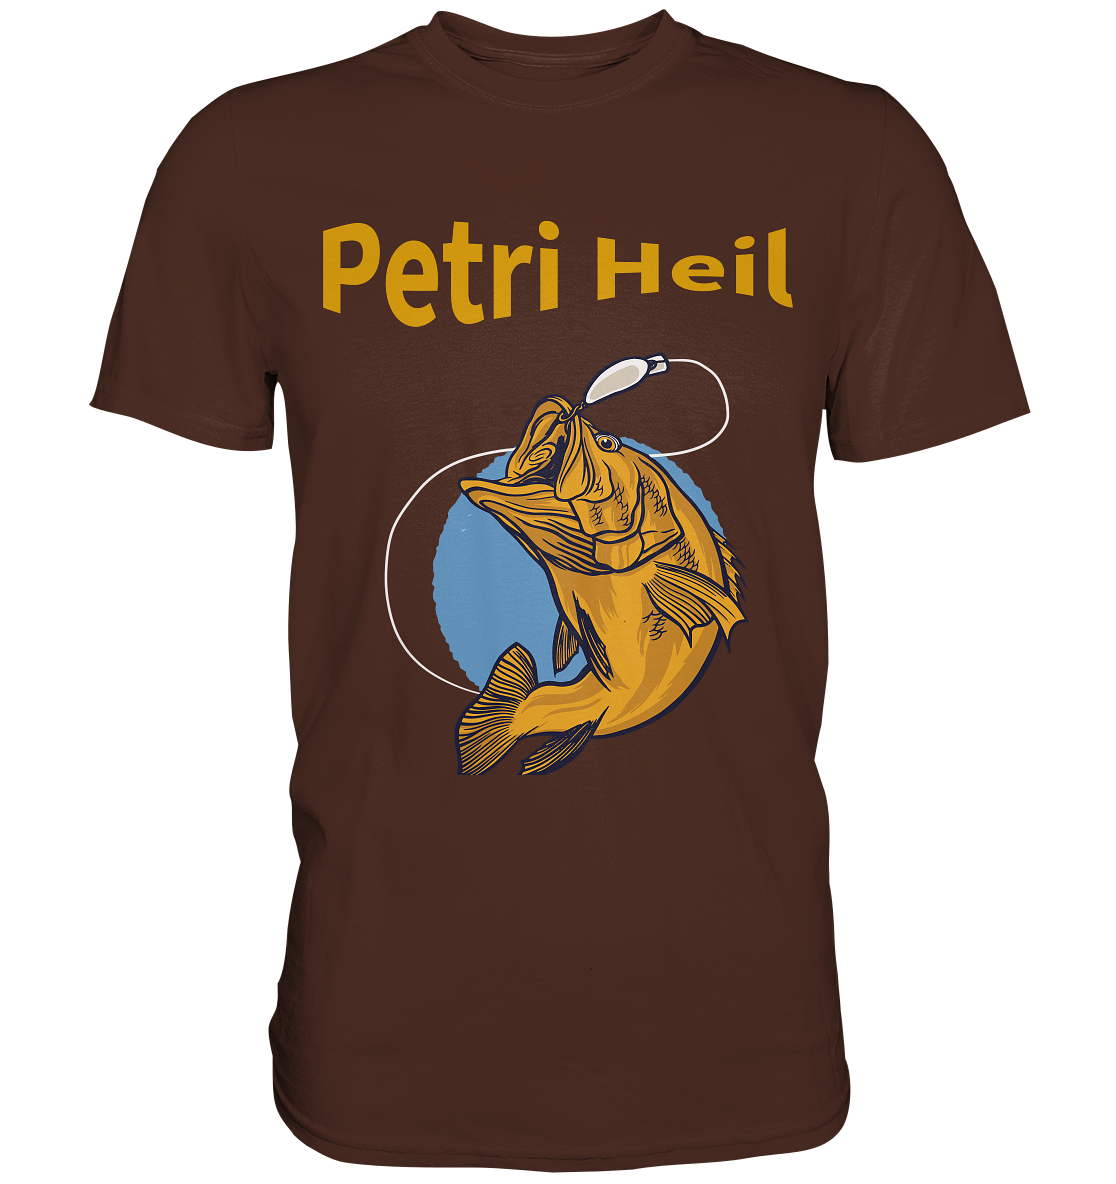 Petri-Heil - Premium Shirt - Online Kaufhaus München